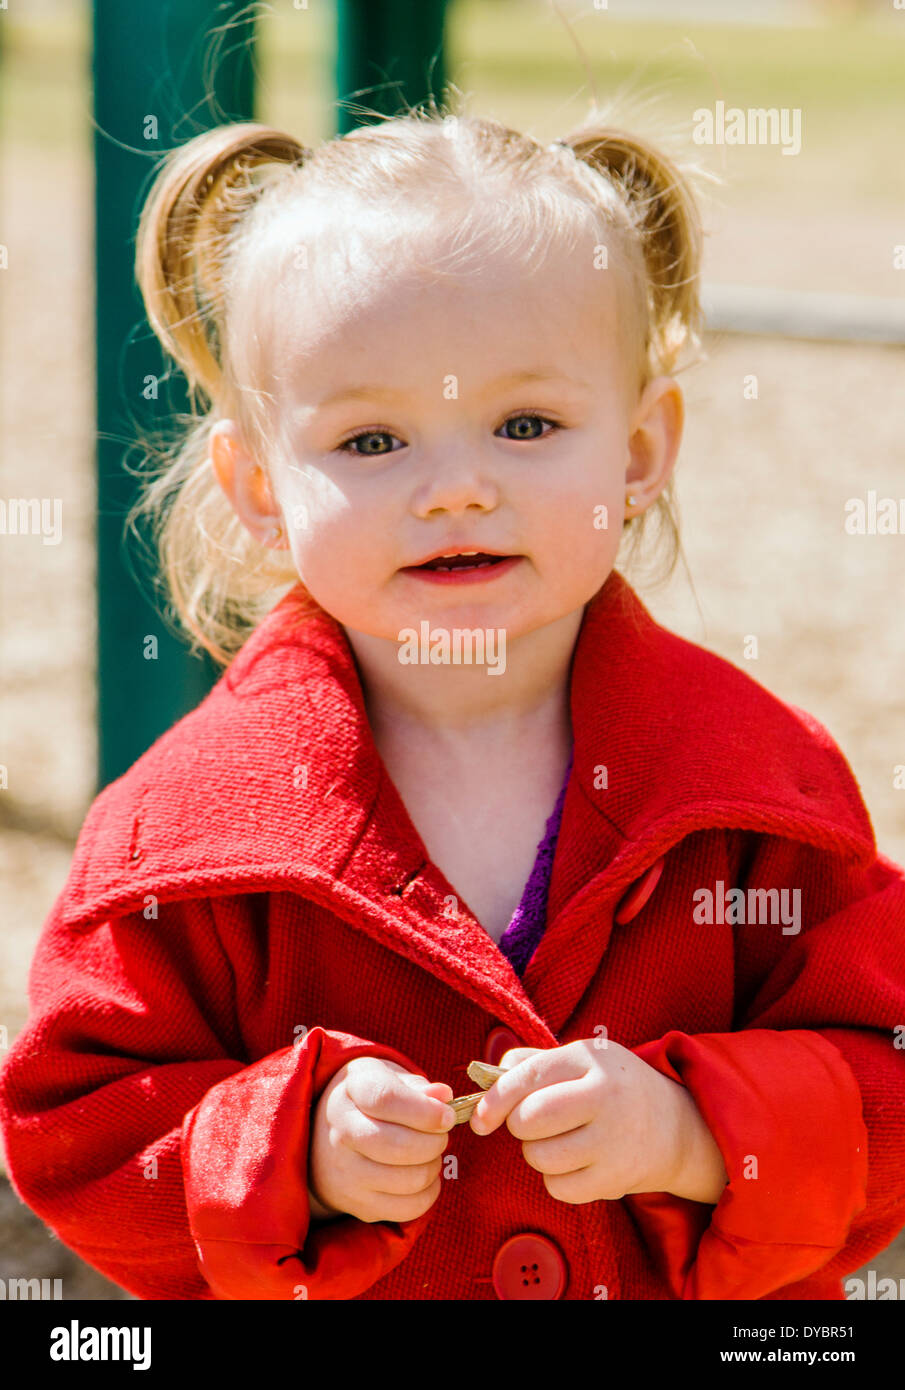 Mignon, adorable petite fille de 16 mois à l'affiche sur un parc jeux pour enfants Banque D'Images